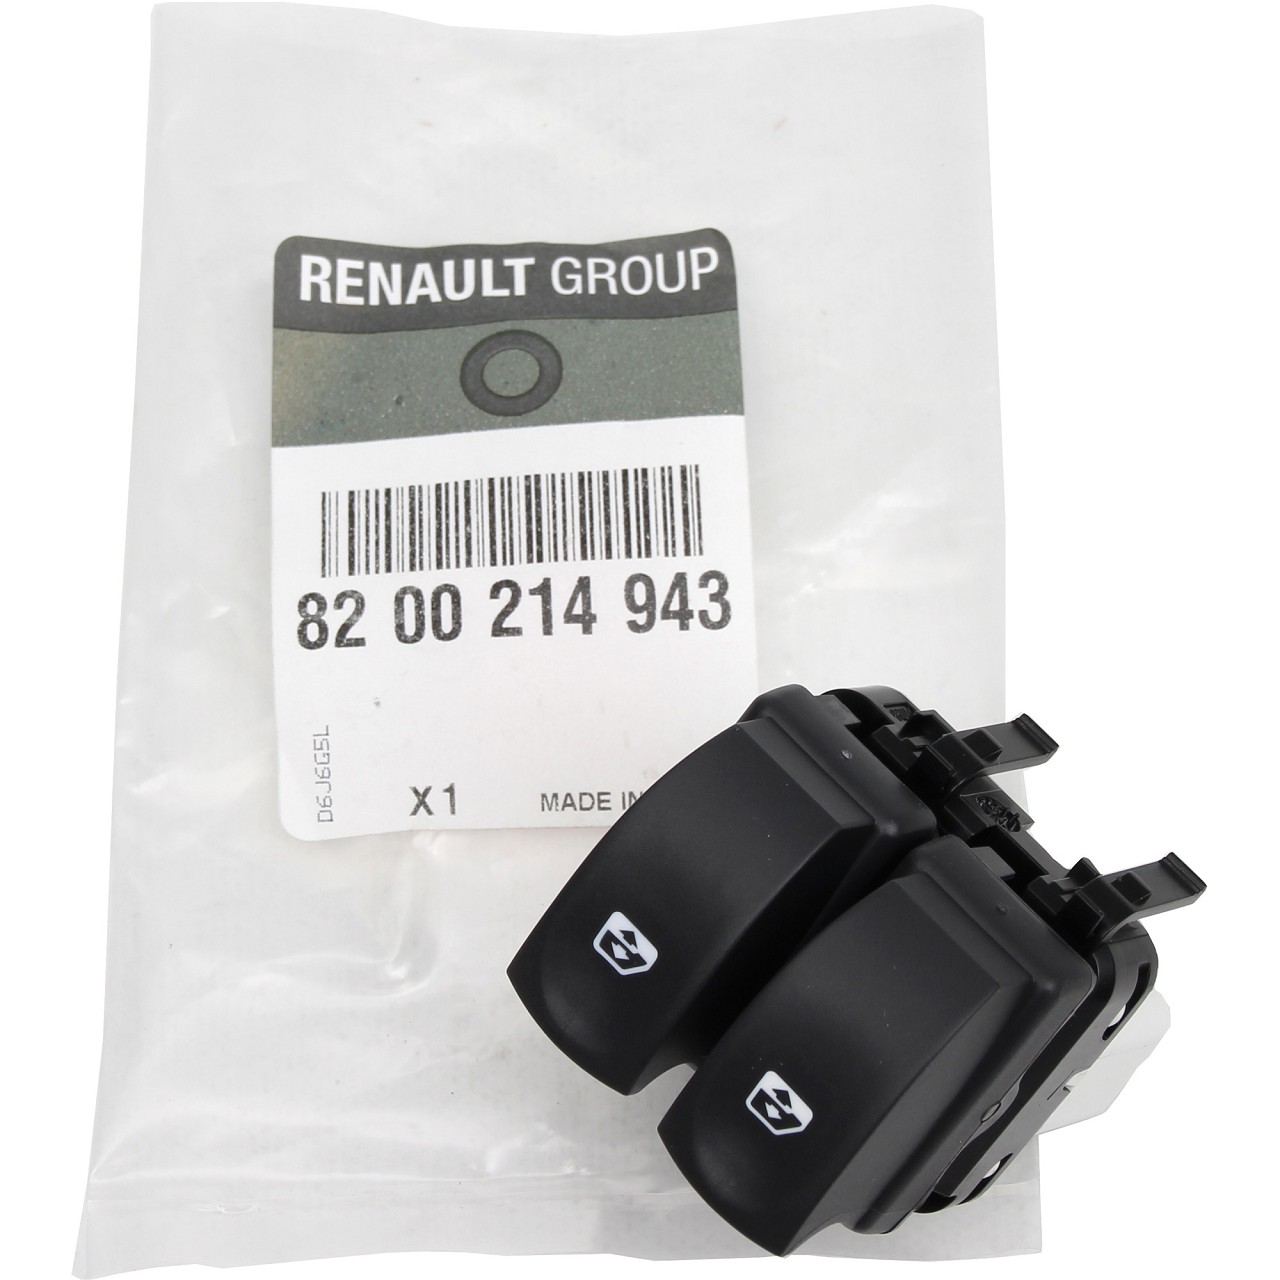 ORIGINAL Renault Schalter Fensterheber CLIO III TWINGO II vorne links 8200214943